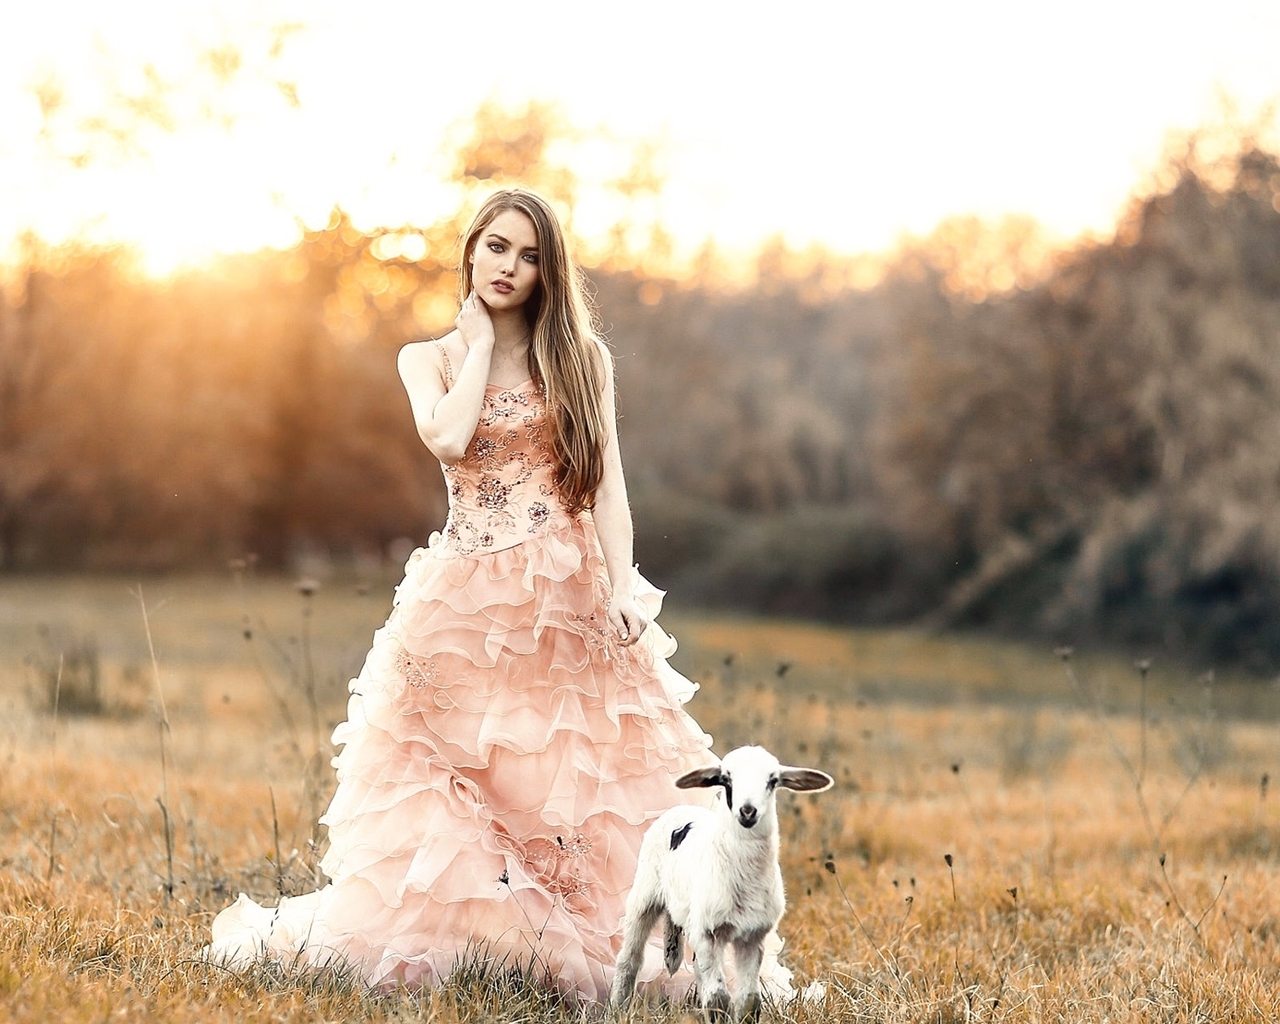 Image: Girl, long hair, dress, goat, field, sunset